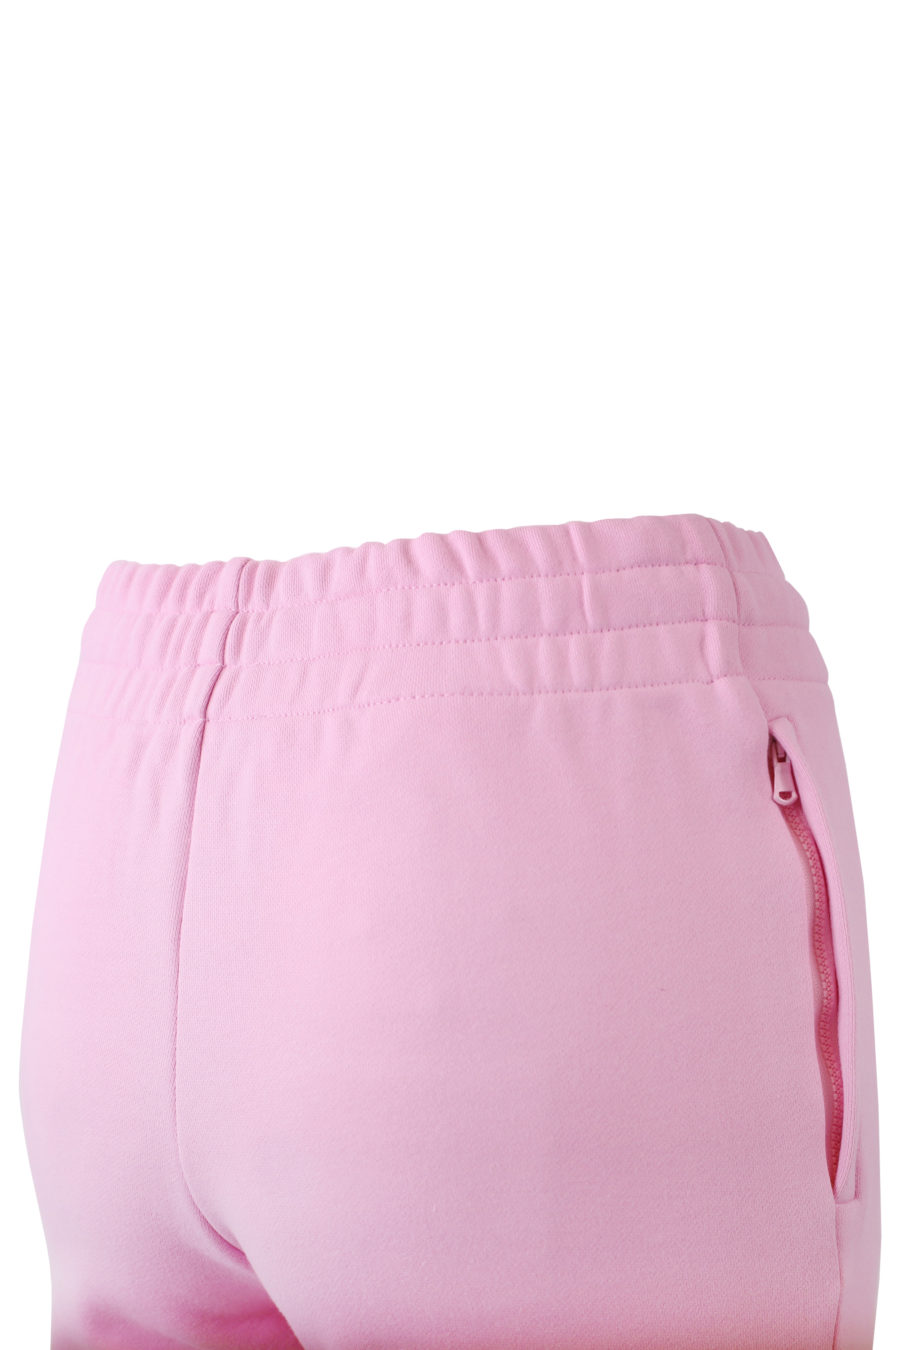 Pantalon rose avec logo en cristaux - copie IMG 7286